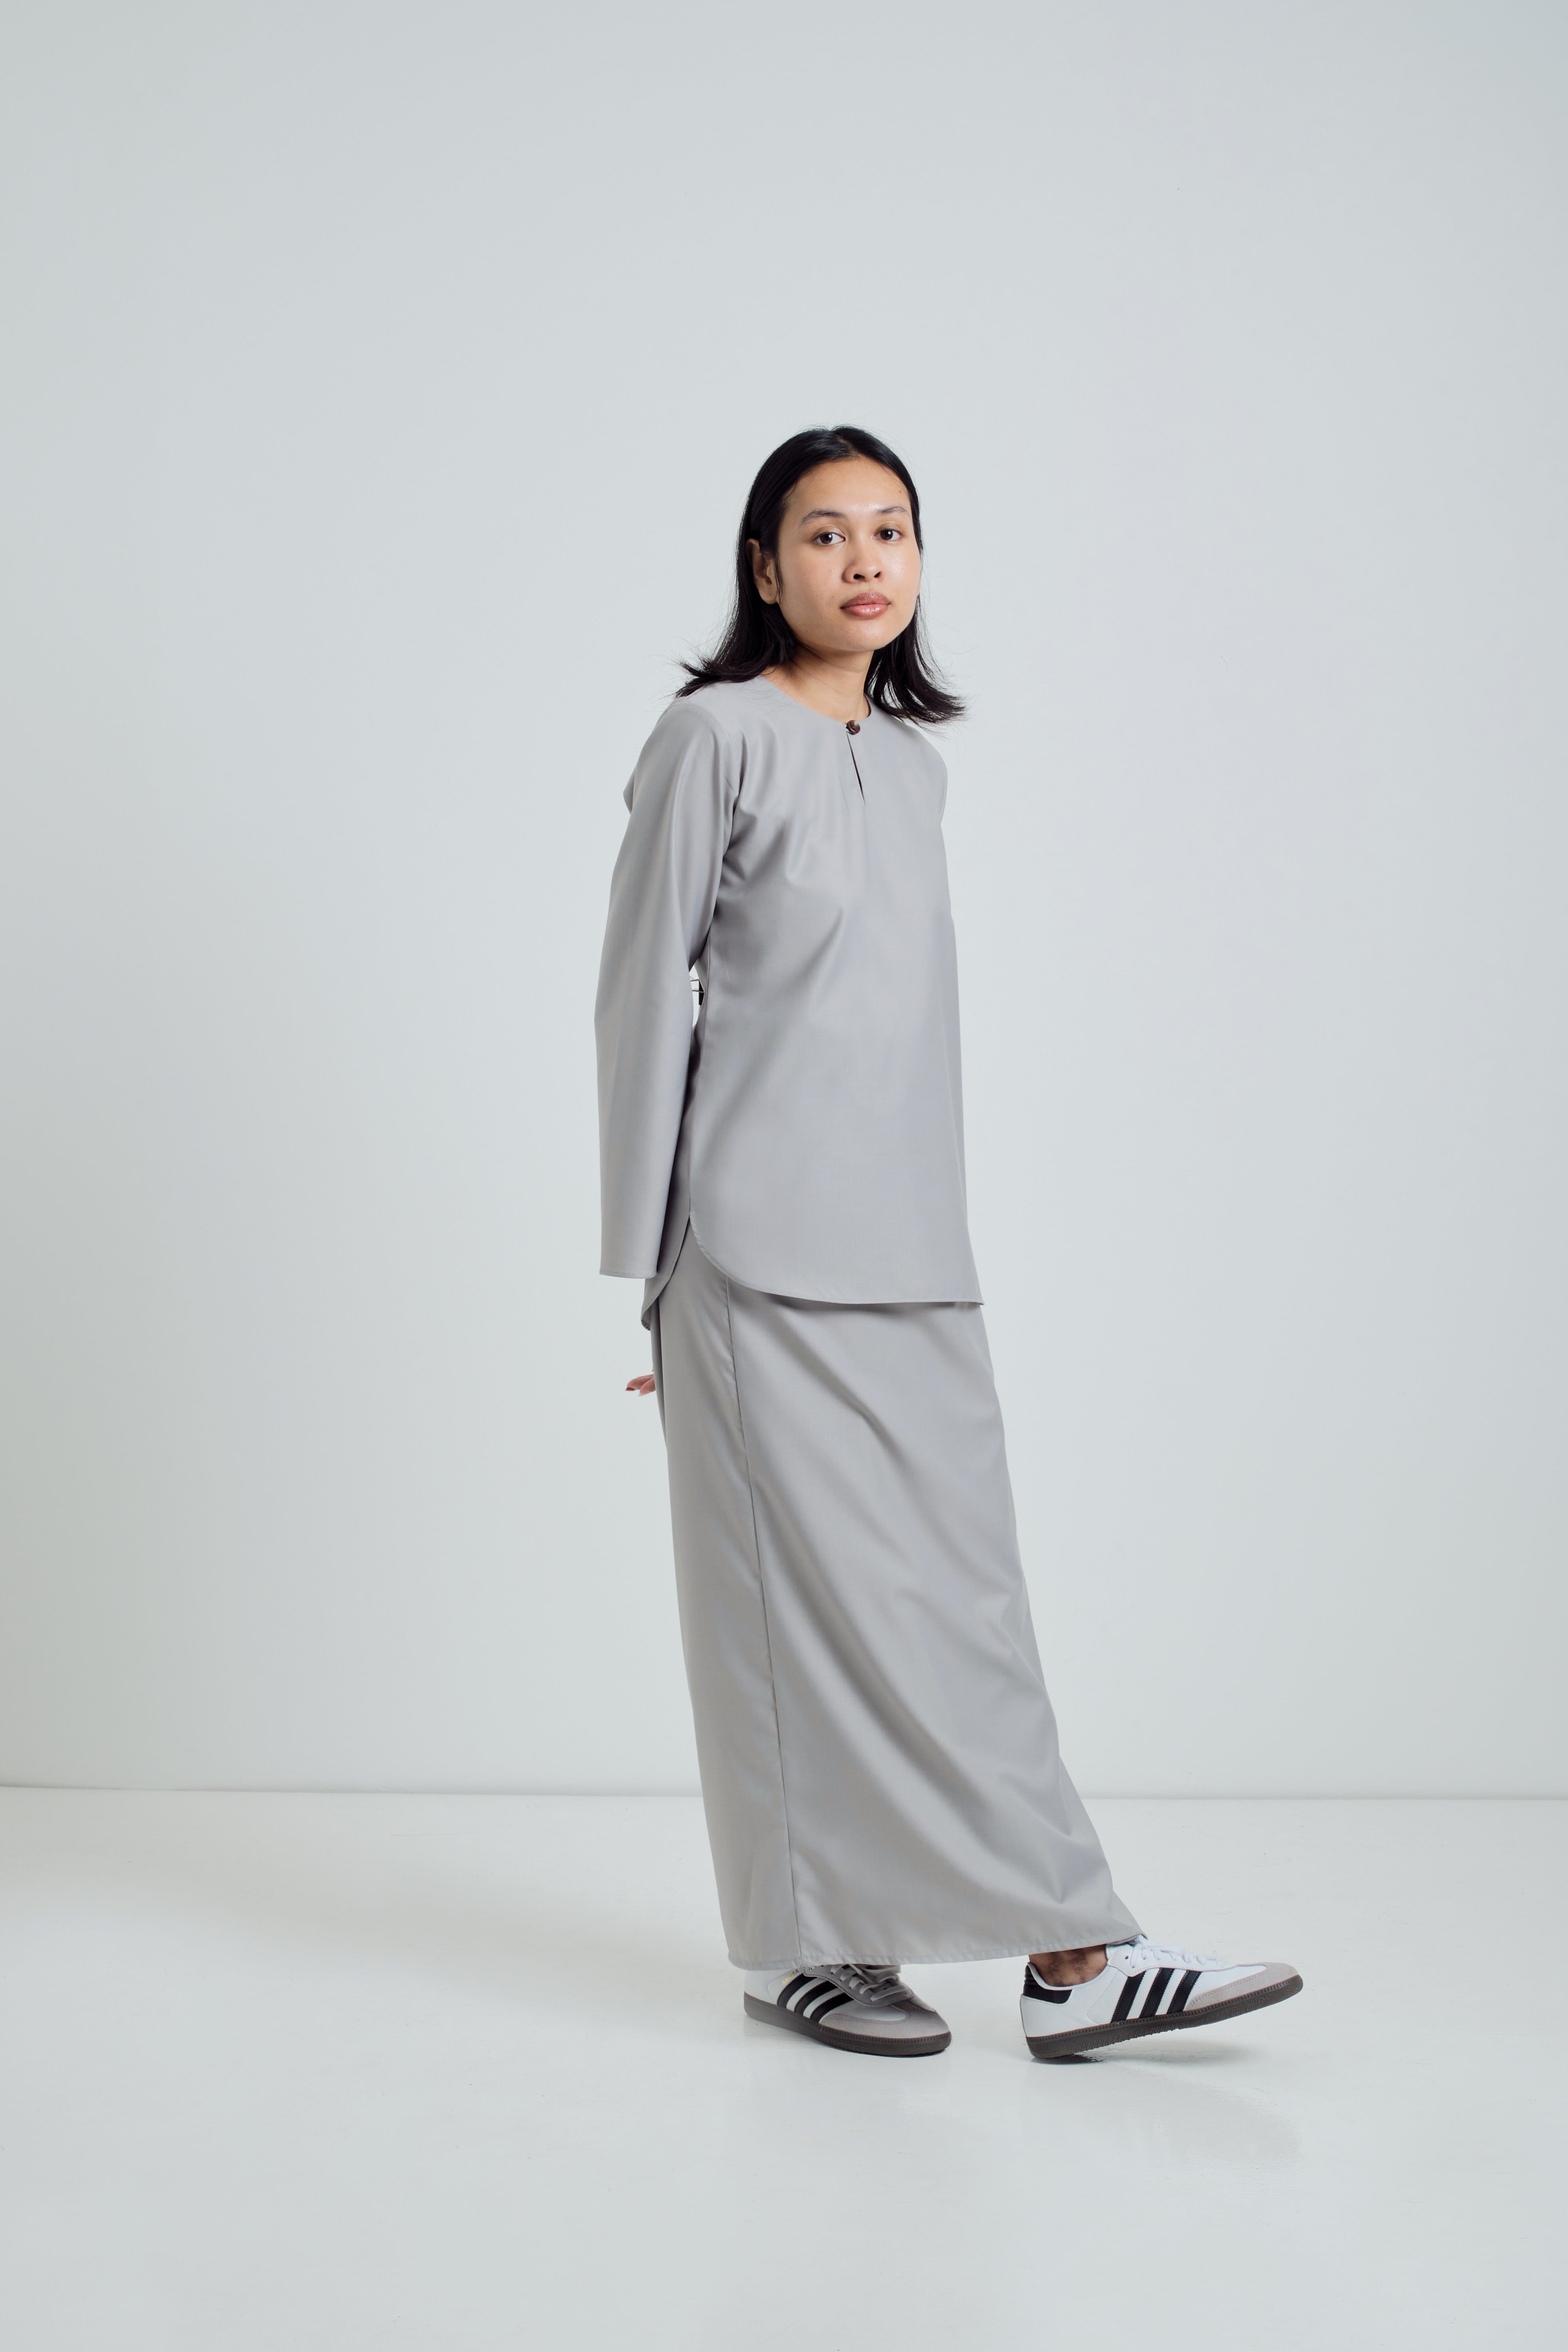 Patawali Baju Kurung - Cool Grey